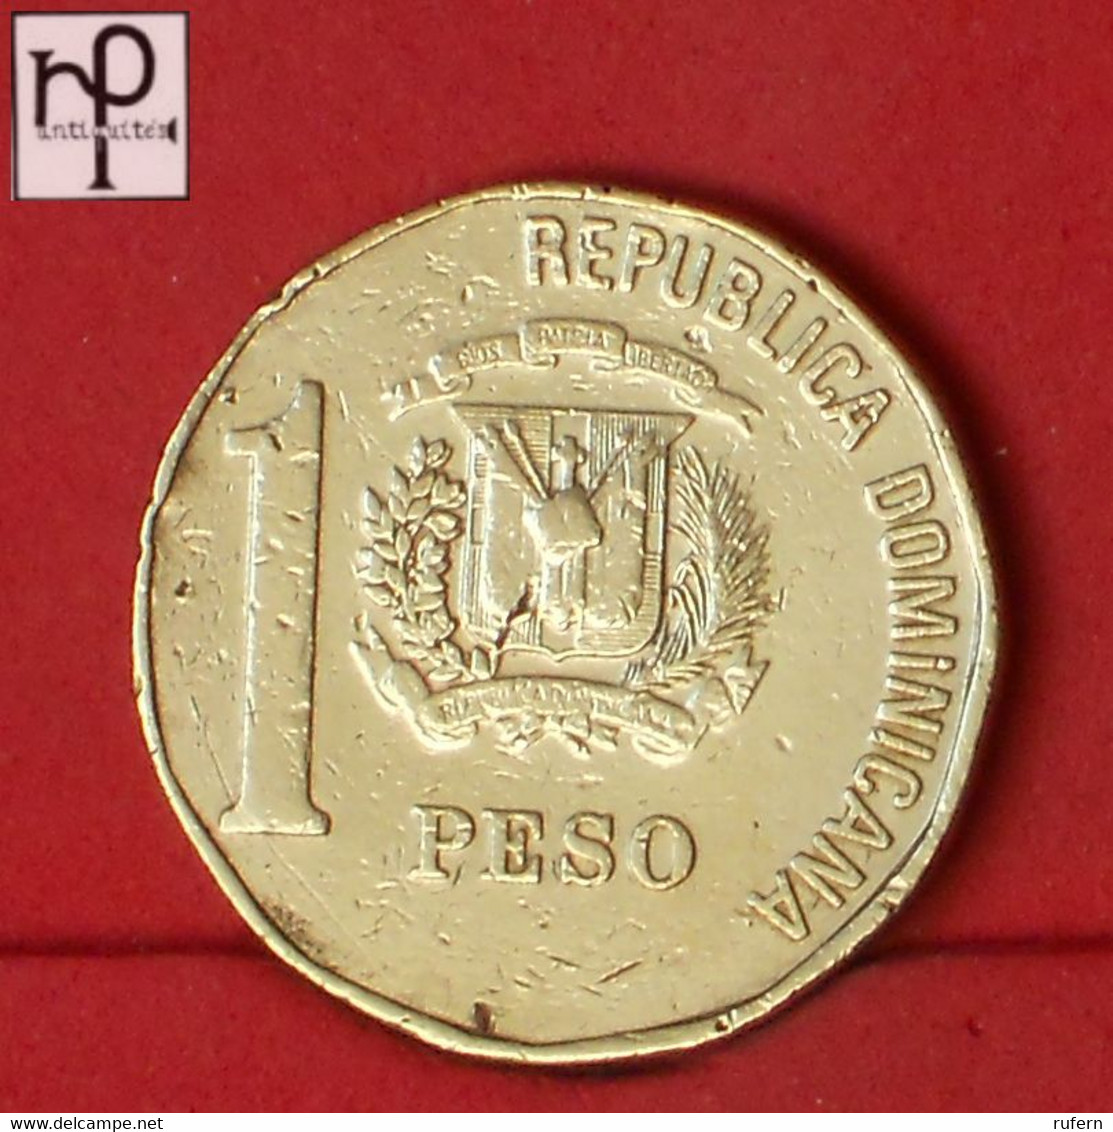 DOMINICANA REPUBLIC 1 PESO 1993 -    KM# 80,2 - (Nº52997) - Dominicana